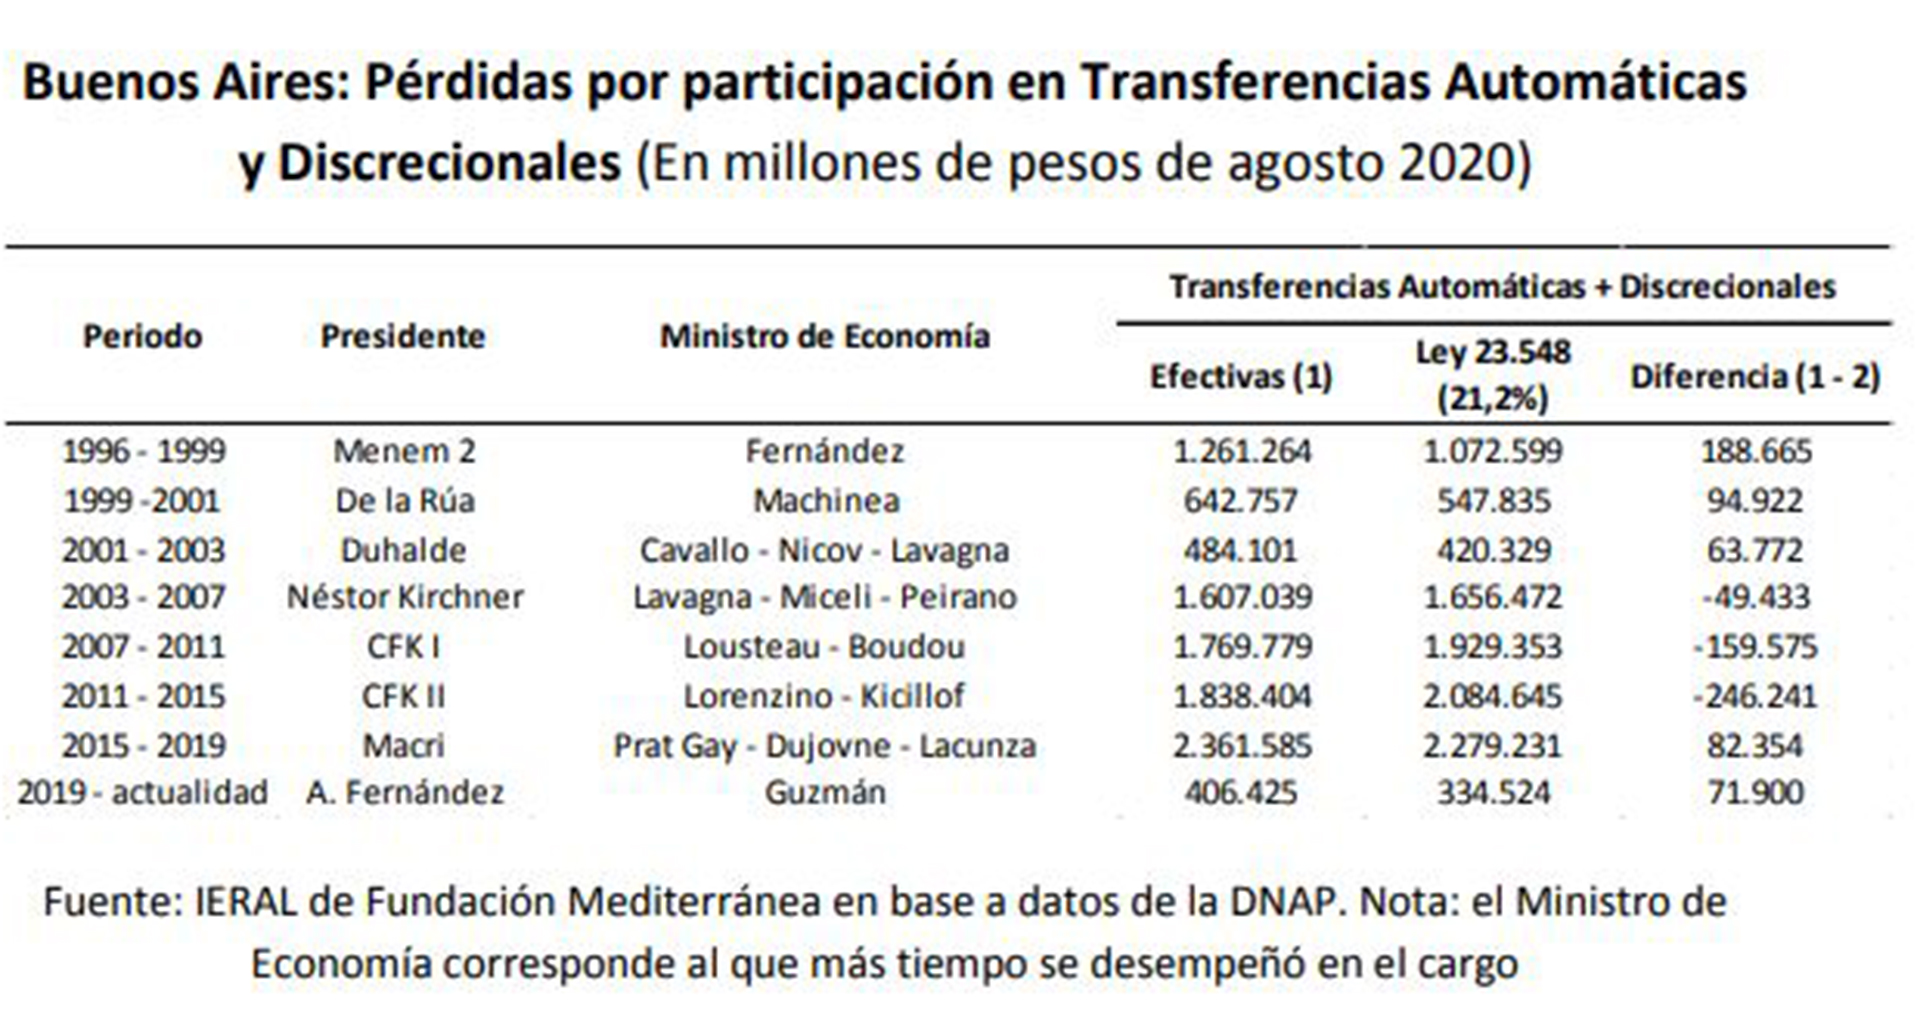 Cálculos de un estudio en base a datos de la Dirección Nacional de Asuntos Provinciales, sobre las pérdidas y ganancias de Buenos Aires durante diferentes gobiernos
